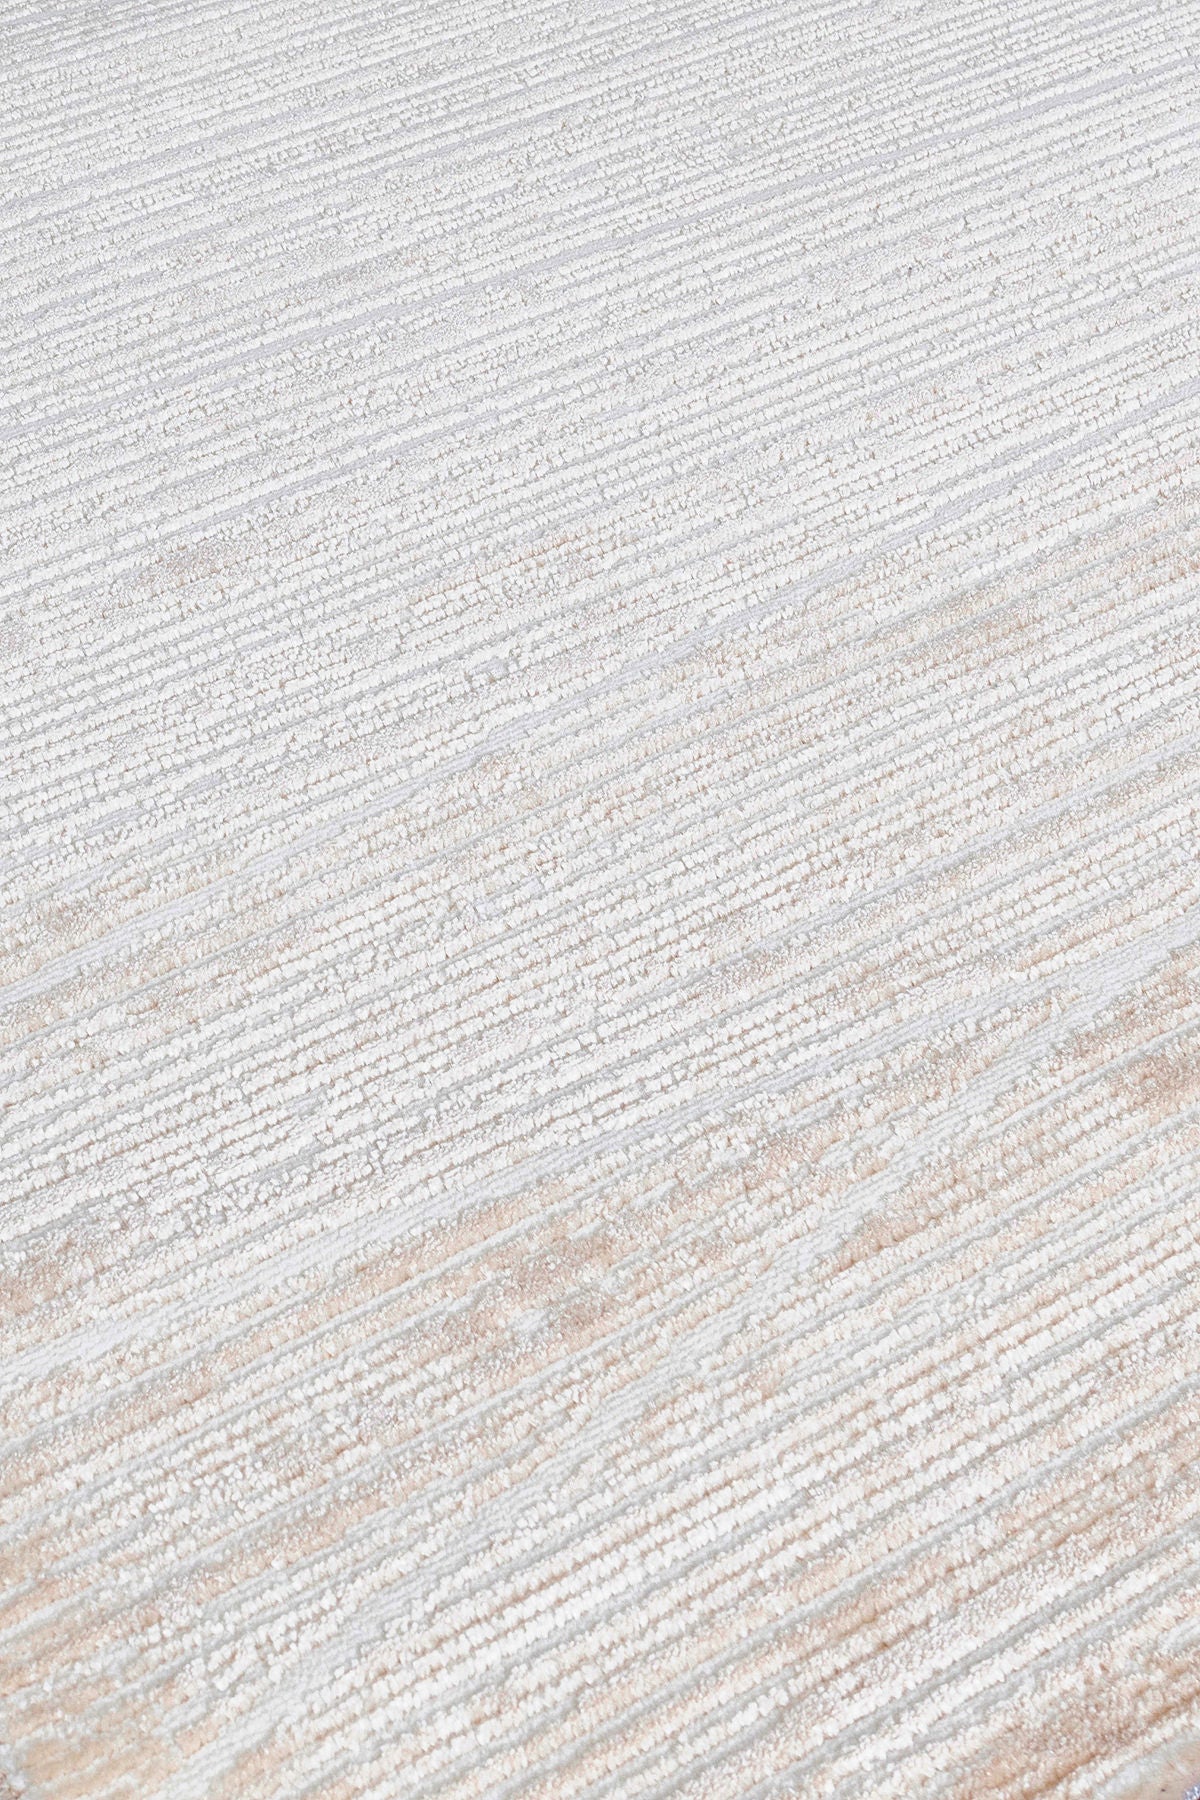 Moda 1510 - Beige - Carpet (100 x 300)